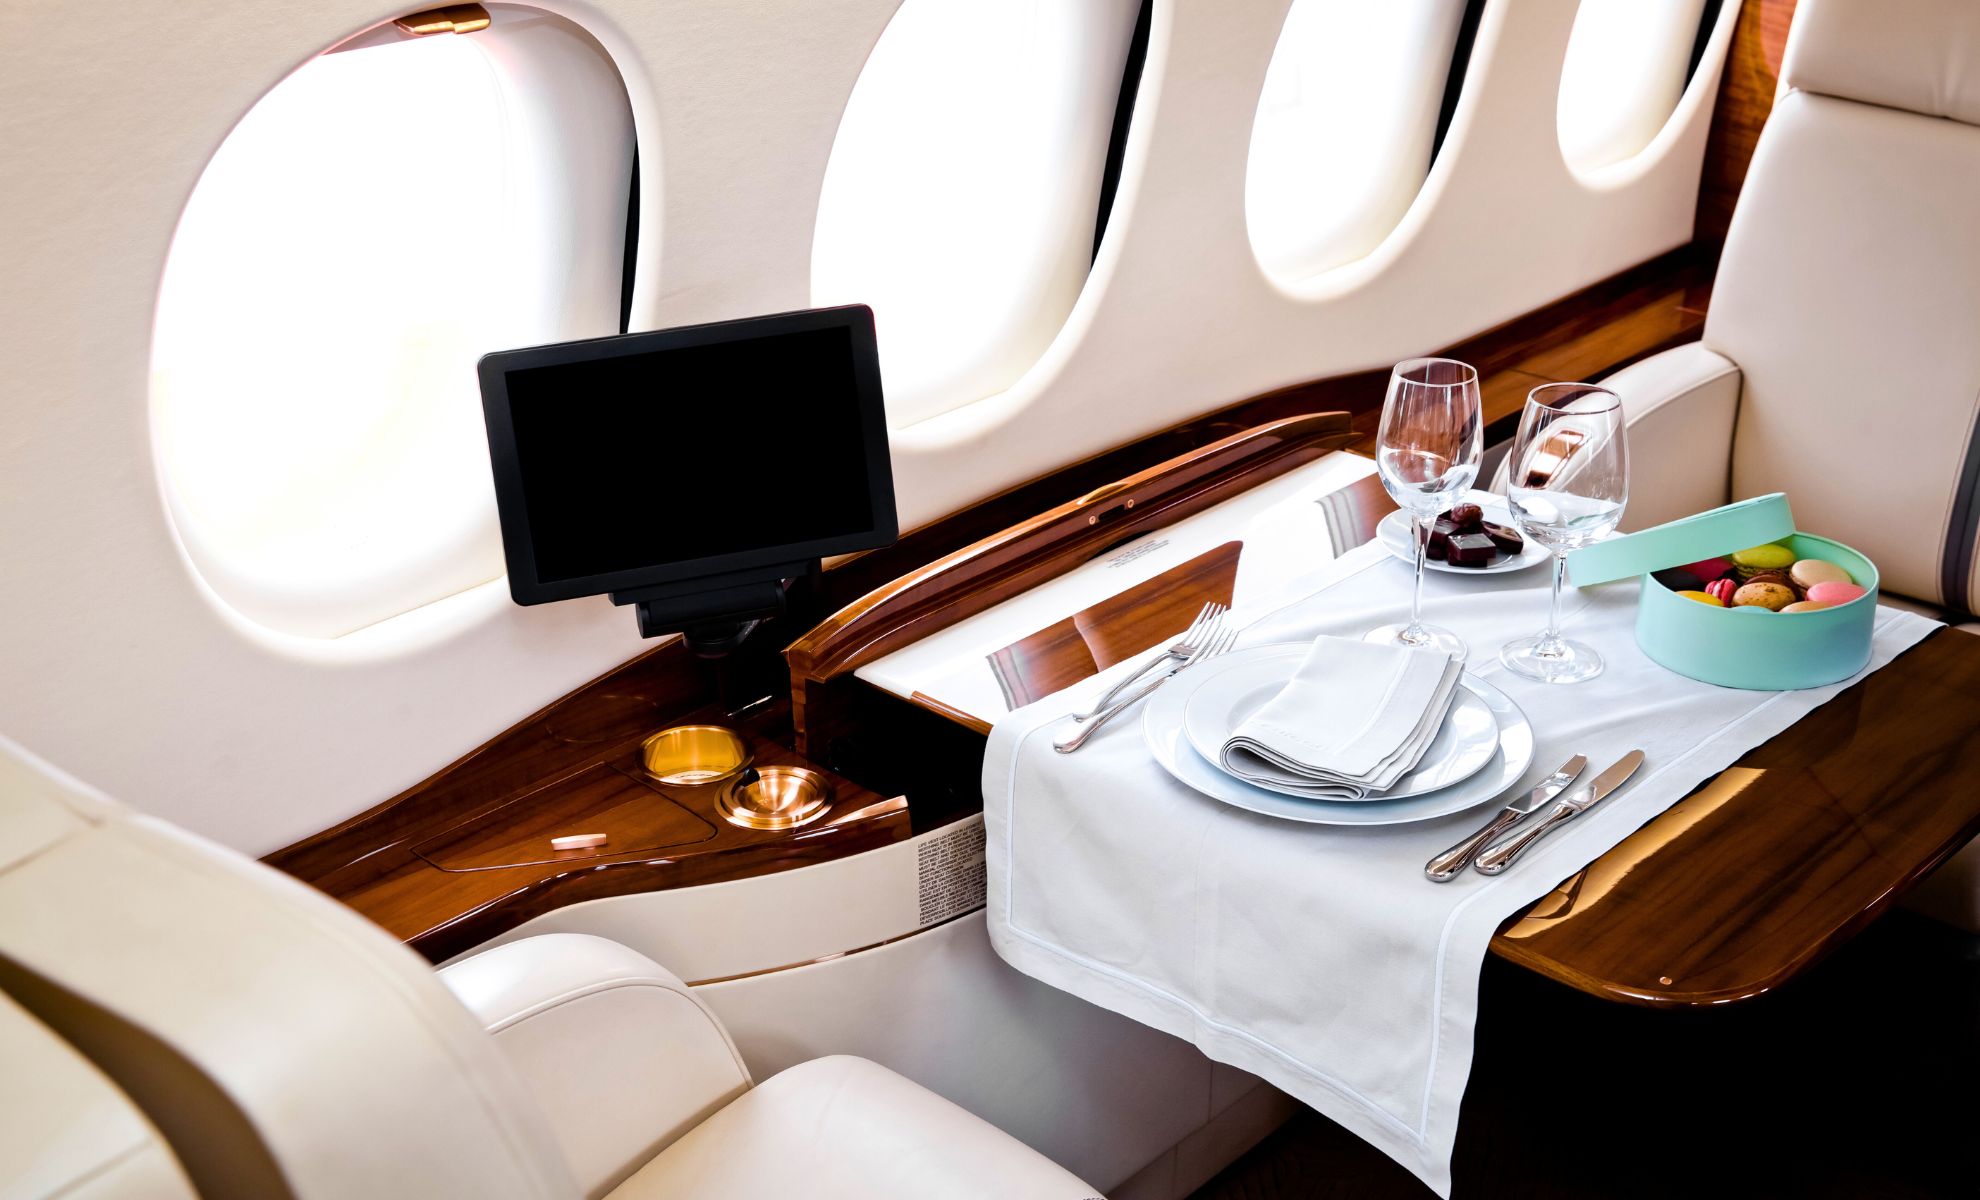 Air france obtient le prix de la meilleure restauration en première classe au monde